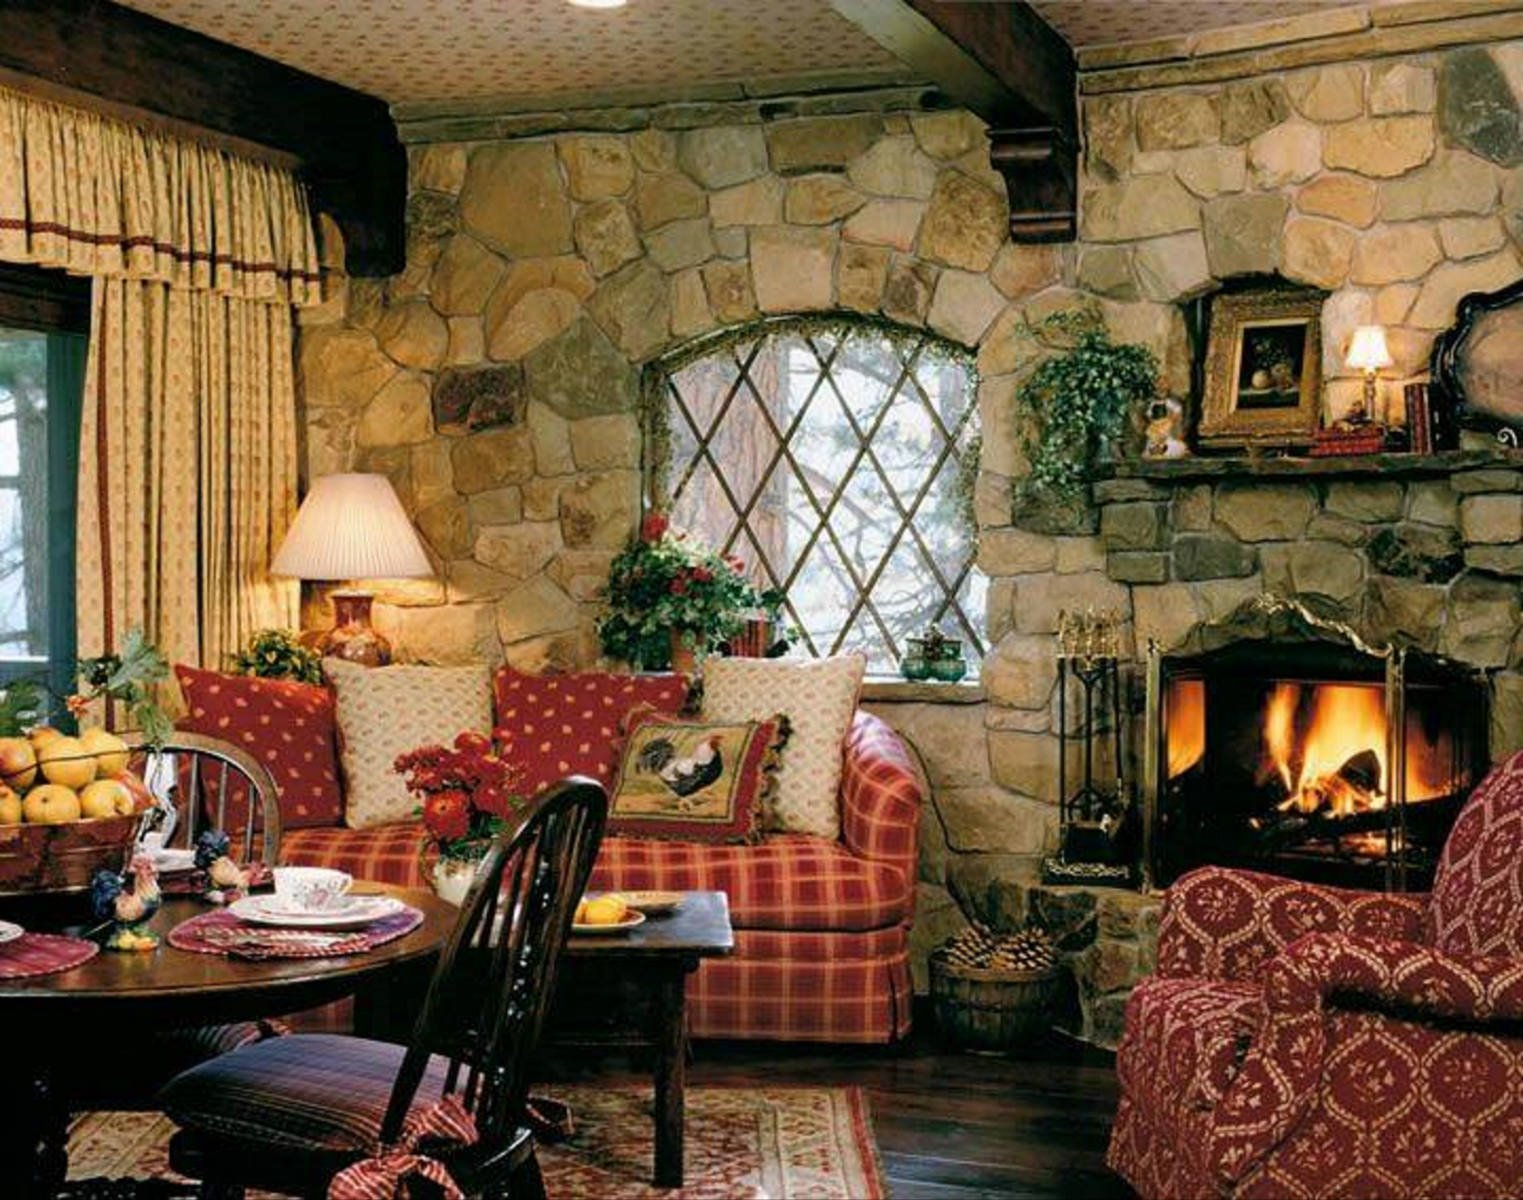 Стар инглиш. Английский стиль в интерьере. Камин в деревенском стиле. Уютный стиль в интерьере. Уютная гостиная в английском стиле.